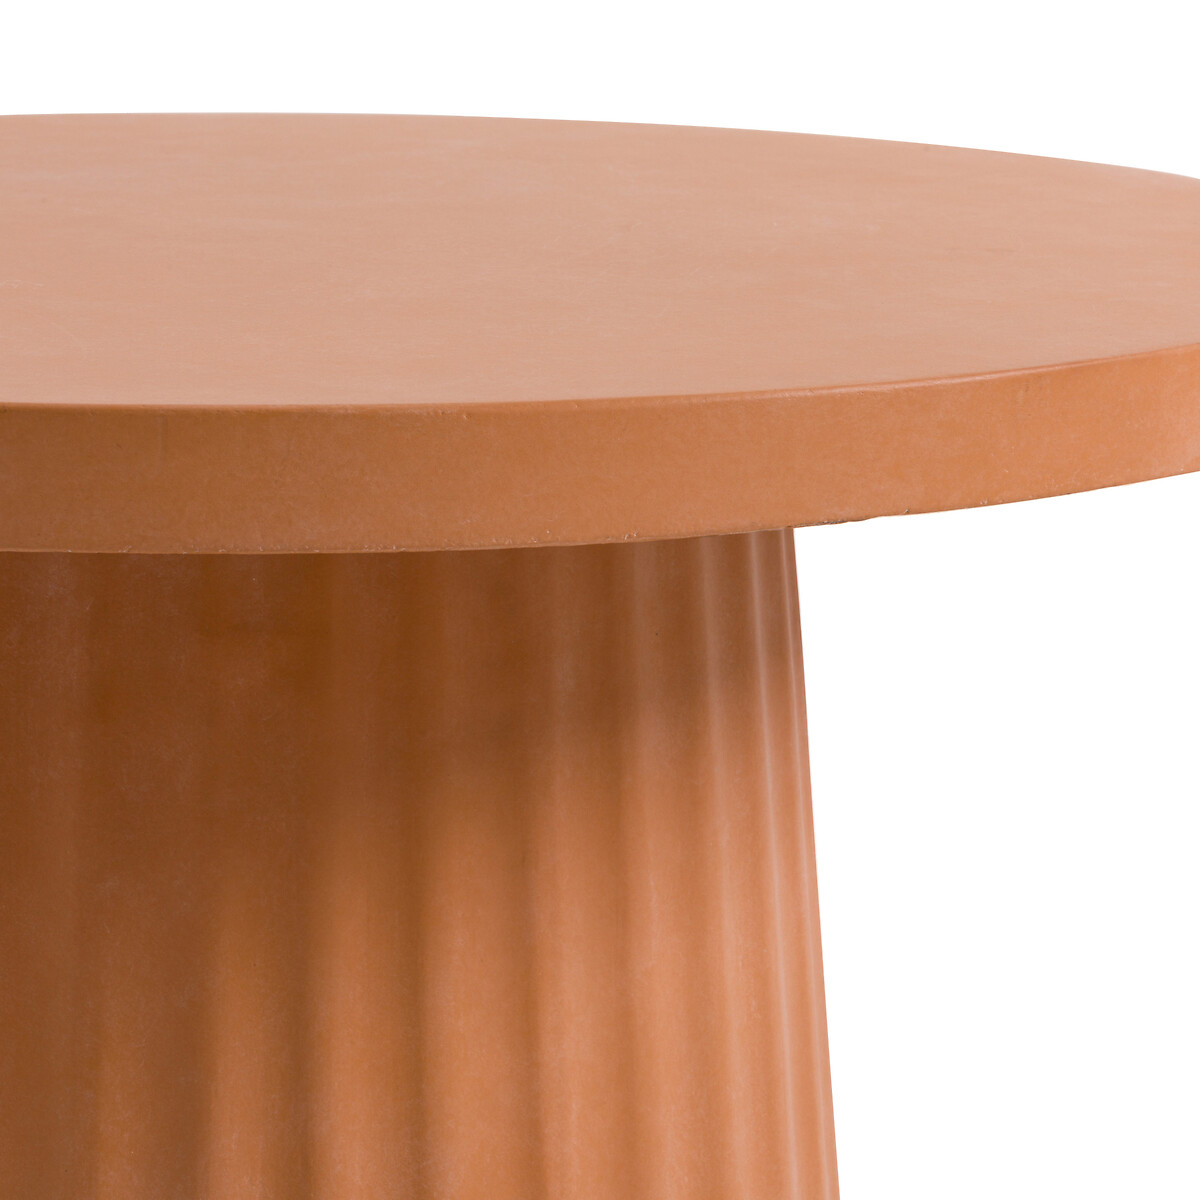 Оранжевый столик. Стол с рифленой ножкой.